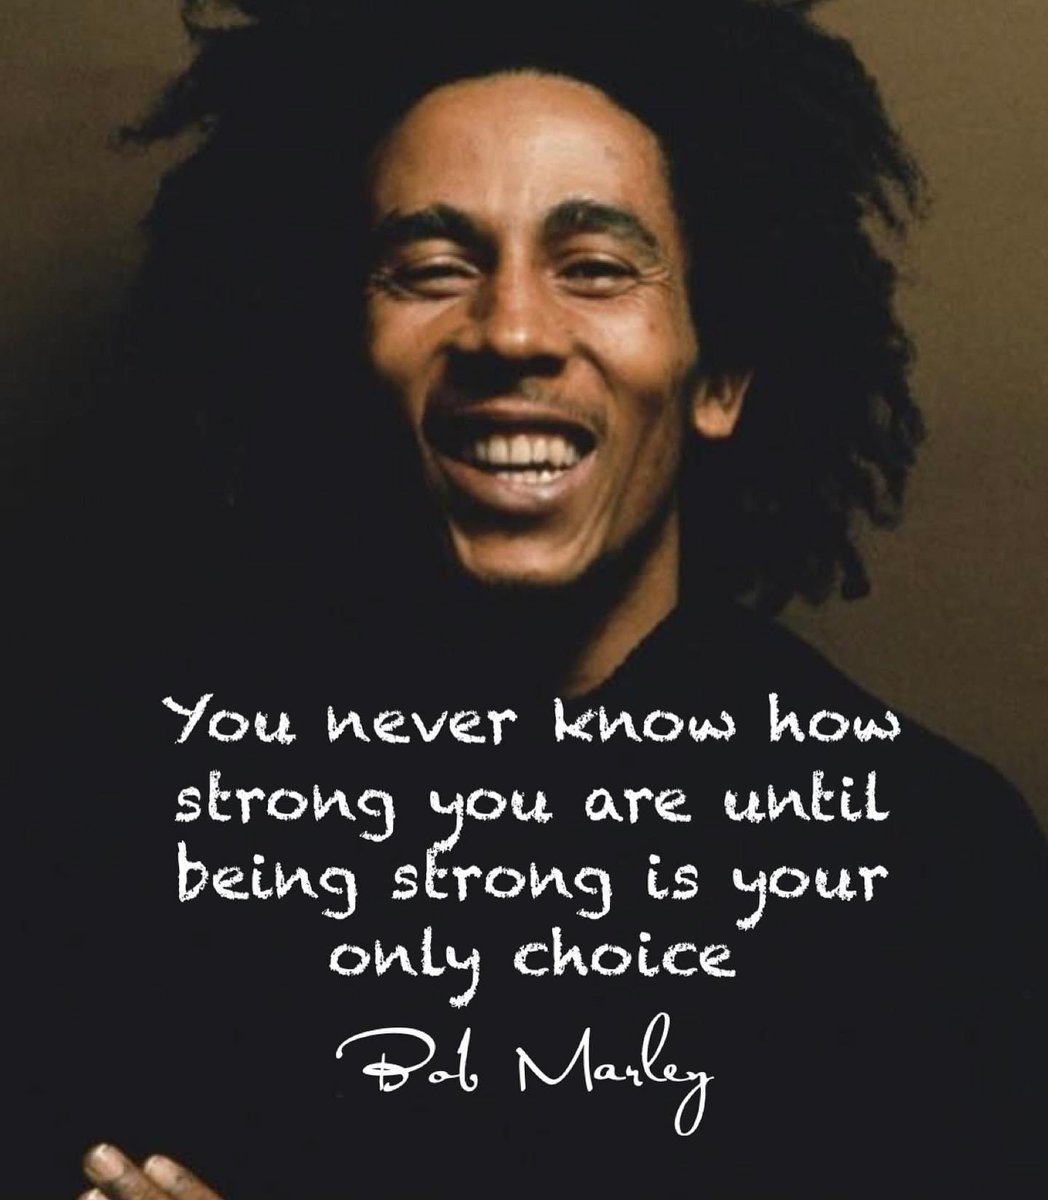 «Ποτέ δεν ξέρεις πόσο δυνατός είσαι μέχρι τη στιγμή που το να είσαι δυνατός είναι η μόνη σου επιλογή». Καλημέρα με λόγια του θρυλικού Bob Marley που έφυγε από τη ζωή σαν σήμερα, στις 11 Μαίου το 1981.
#bestrong #inspiration #bobmarley #legend 🇯🇲